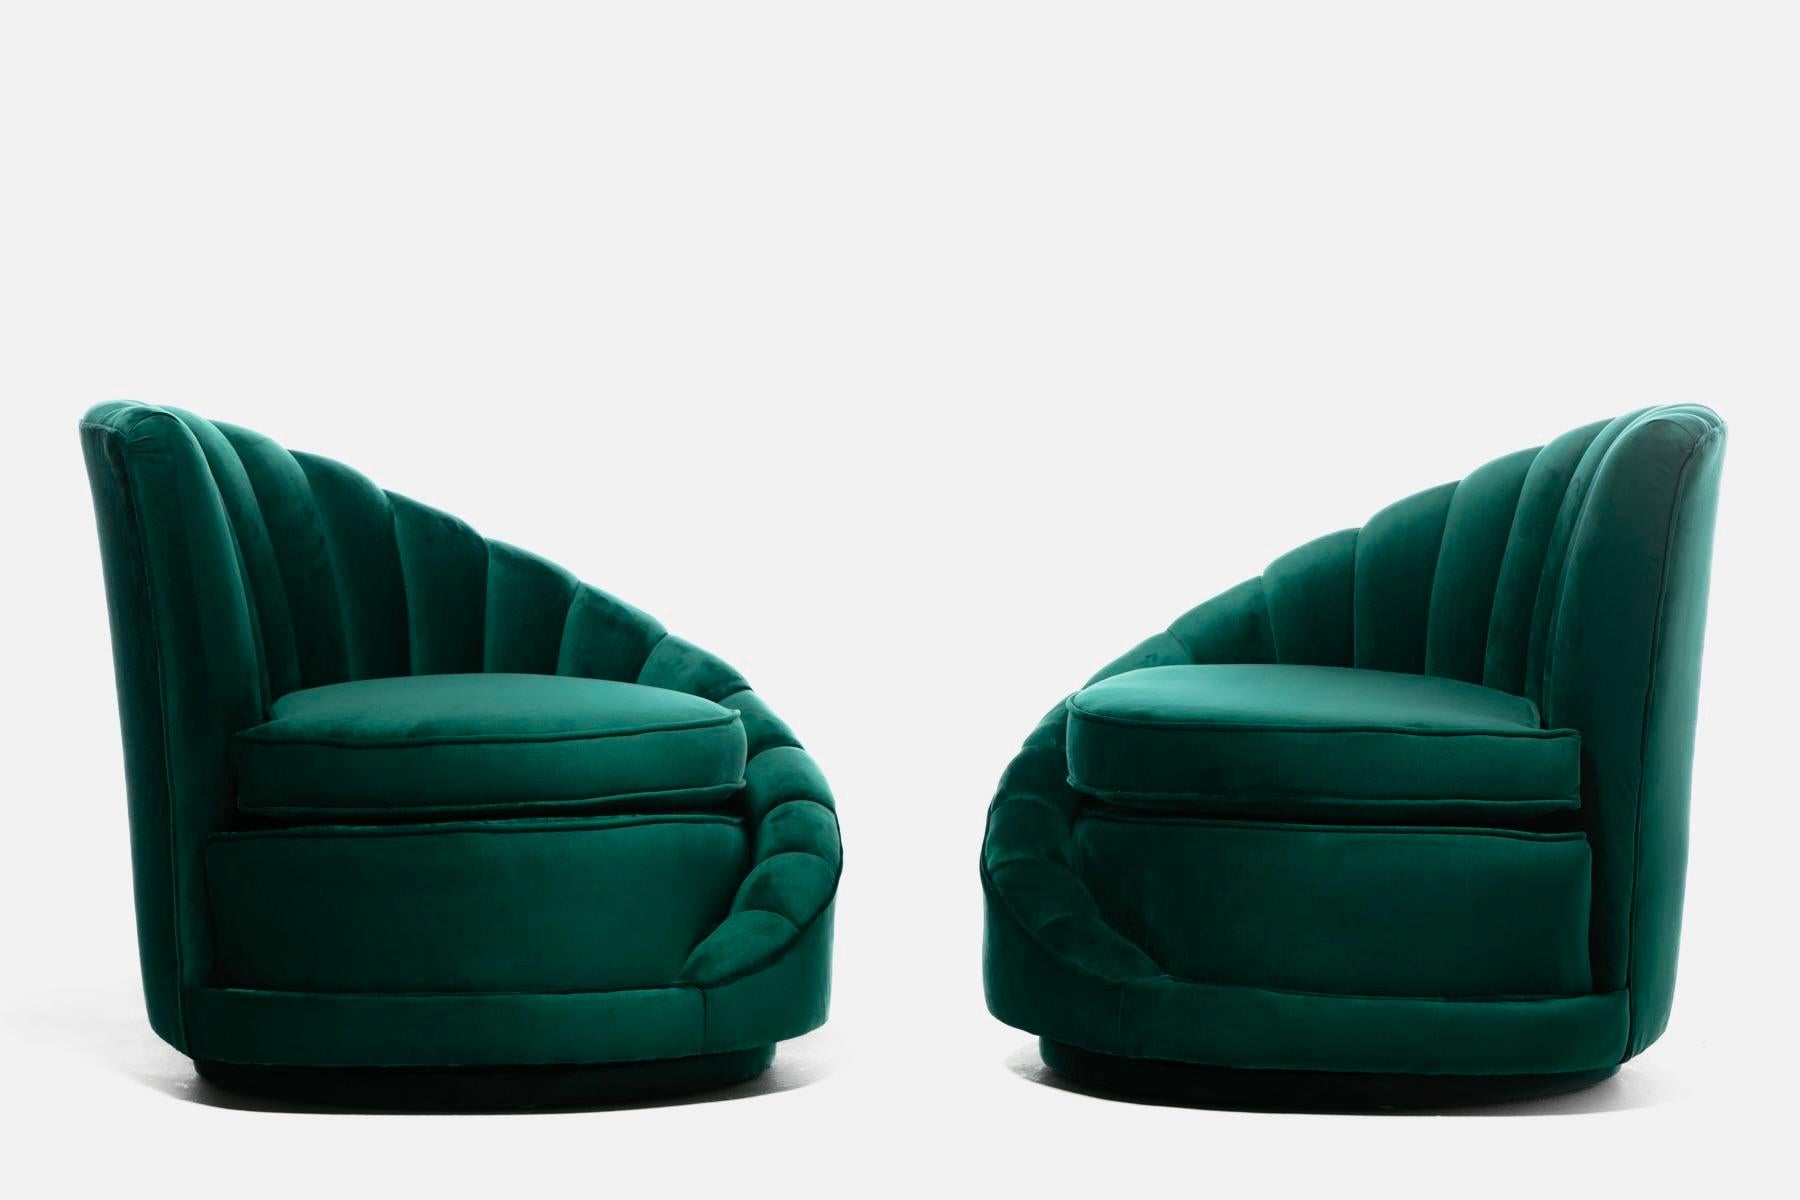 Hollywood Regency Glamorous Asymmetrical Swivel Chairs in Emerald Green Velvet For Sale 13